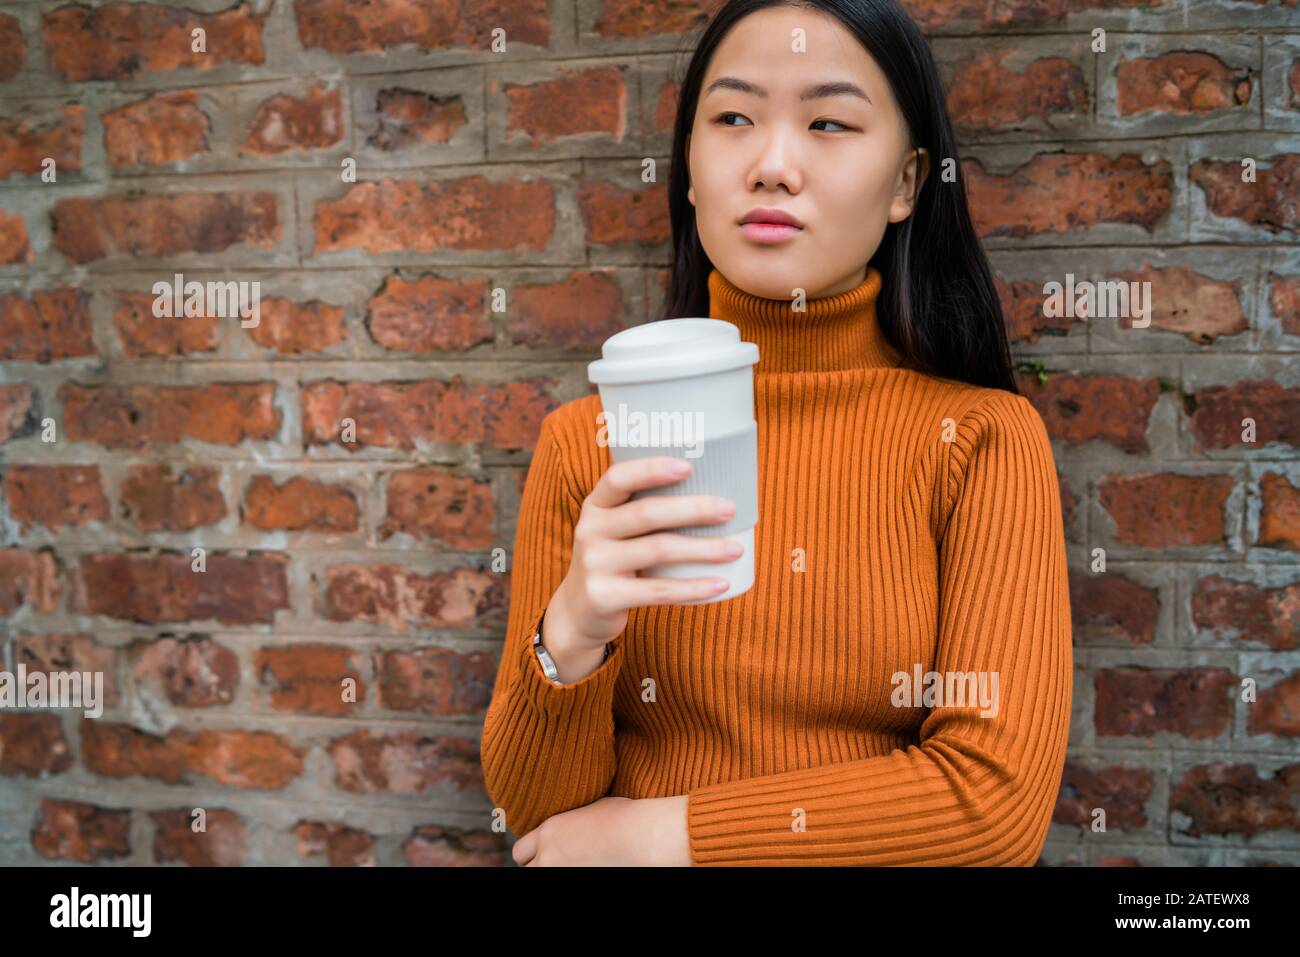 Portrait of young Asian woman holding une tasse de café contre mur de briques. Concept urbain. Banque D'Images